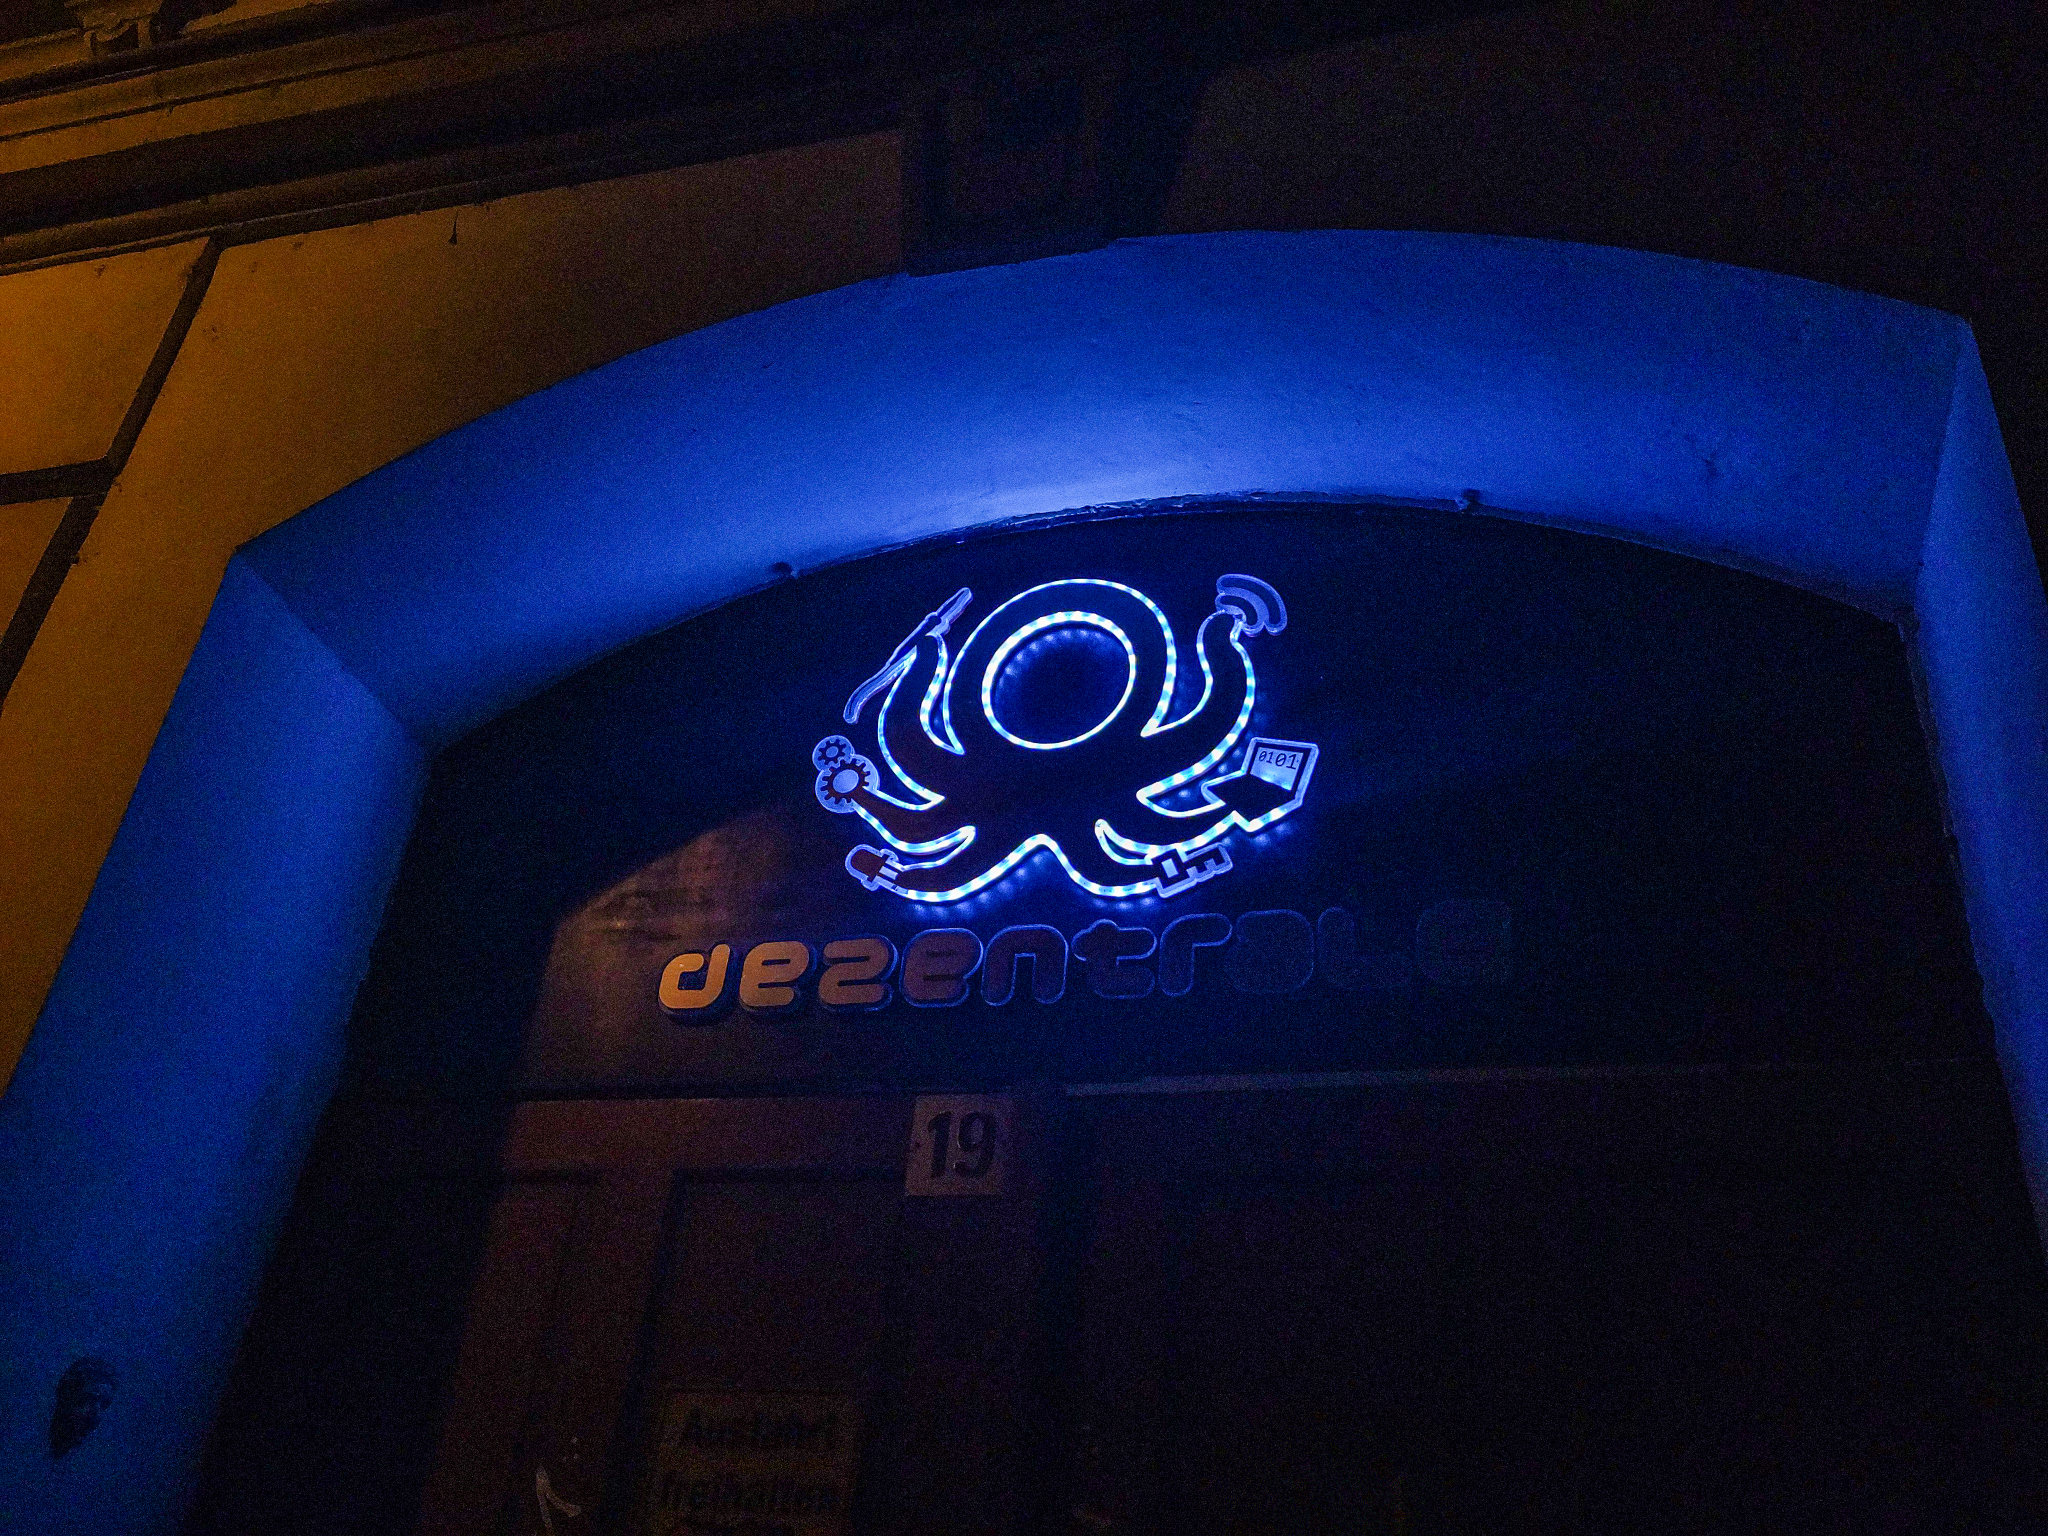 Das Logo der dezentrale an der Eingangstür. Es wird mit RGB LEDs weiß beleuchtet. Der Schriftzug ist unbeleuchtet